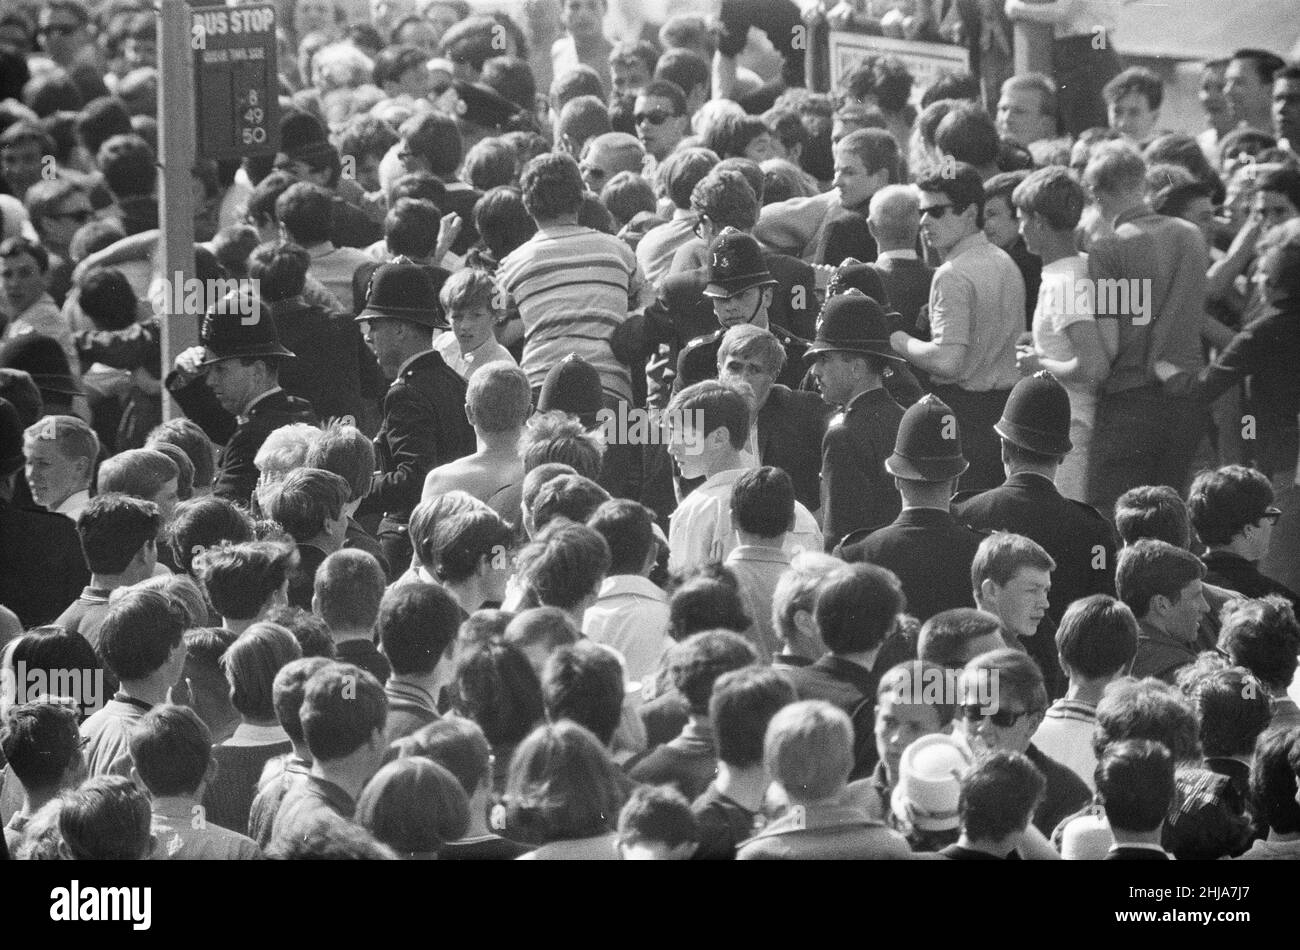 Mods gegen Rockers. Bild zeigt die Szene in Margate, North East Kent im Mai 1964. Die Polizei versucht, die Dinge ruhig zu halten, während sich die Massen von Mods versammeln. Bild aufgenommen am 17th. Mai 1964 Stockfoto